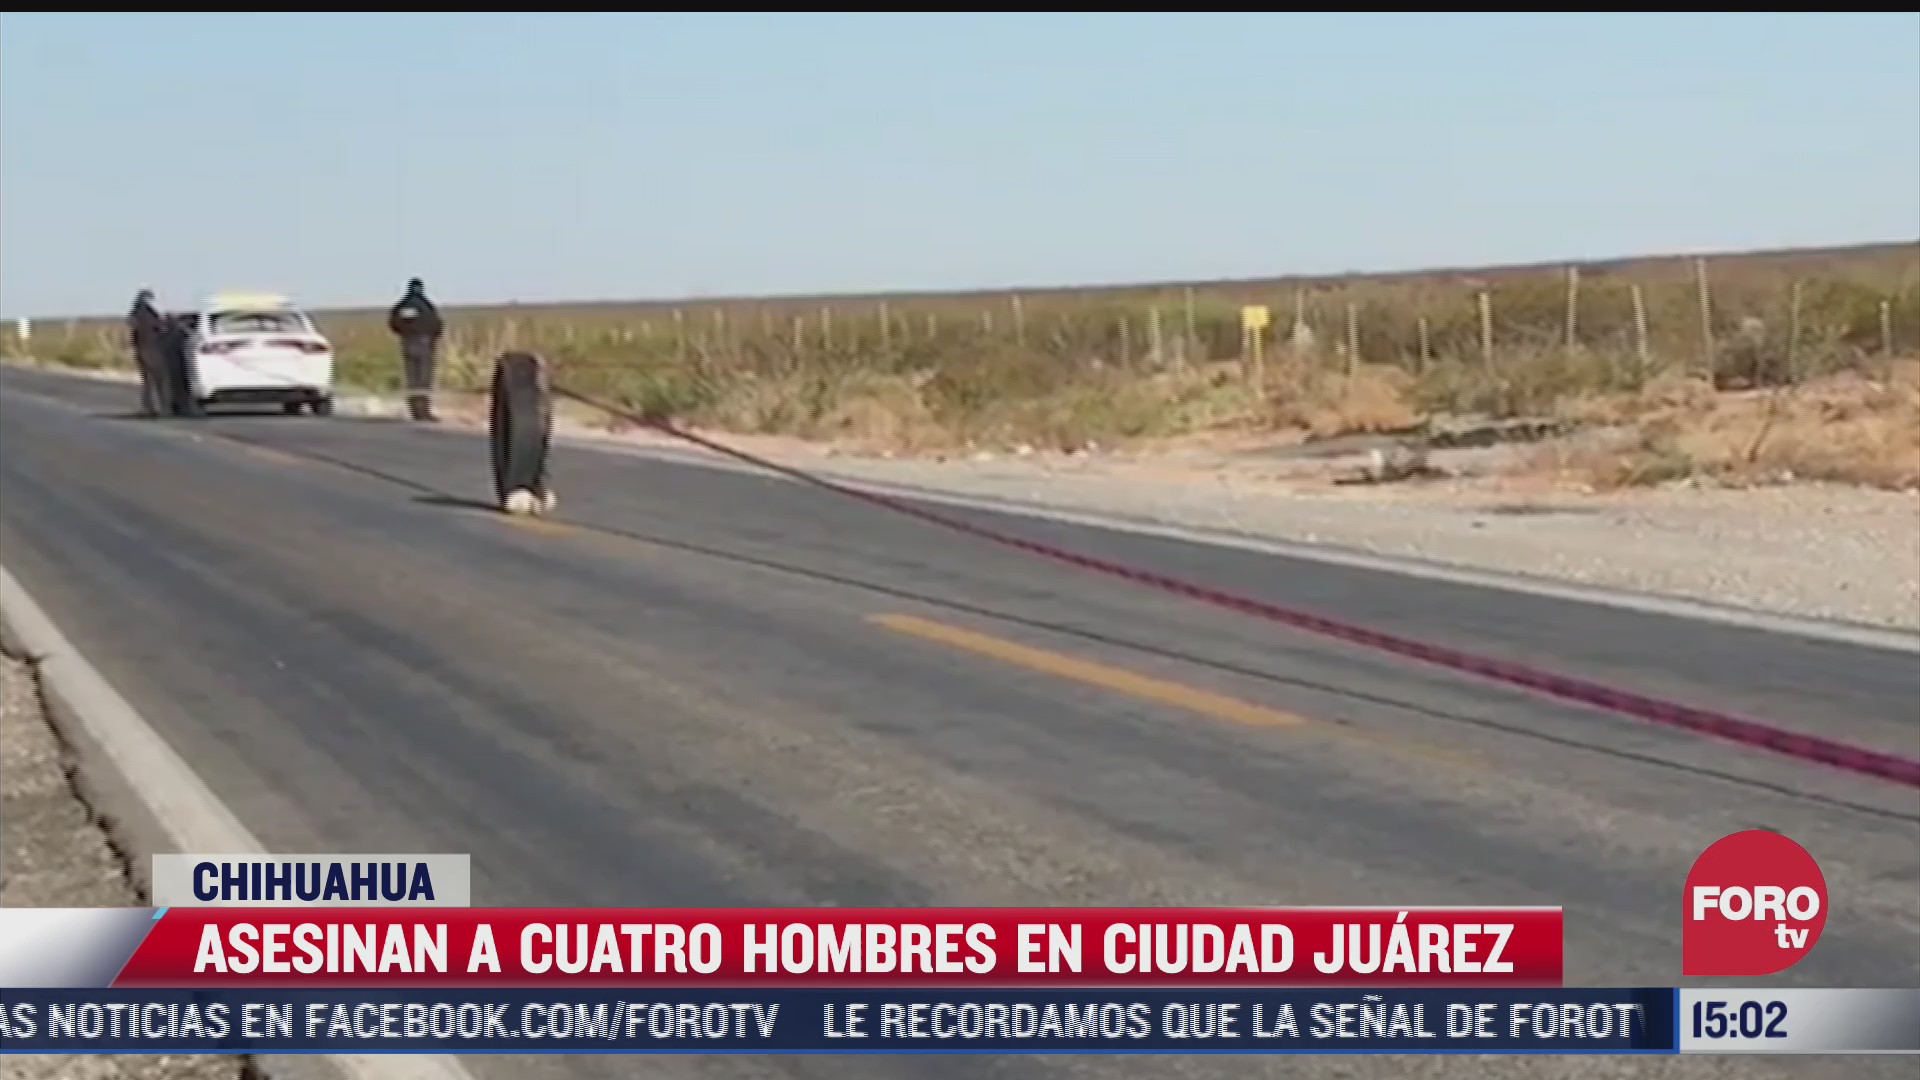 asesinan a 4 hombres en ciudad juarez chihuahua